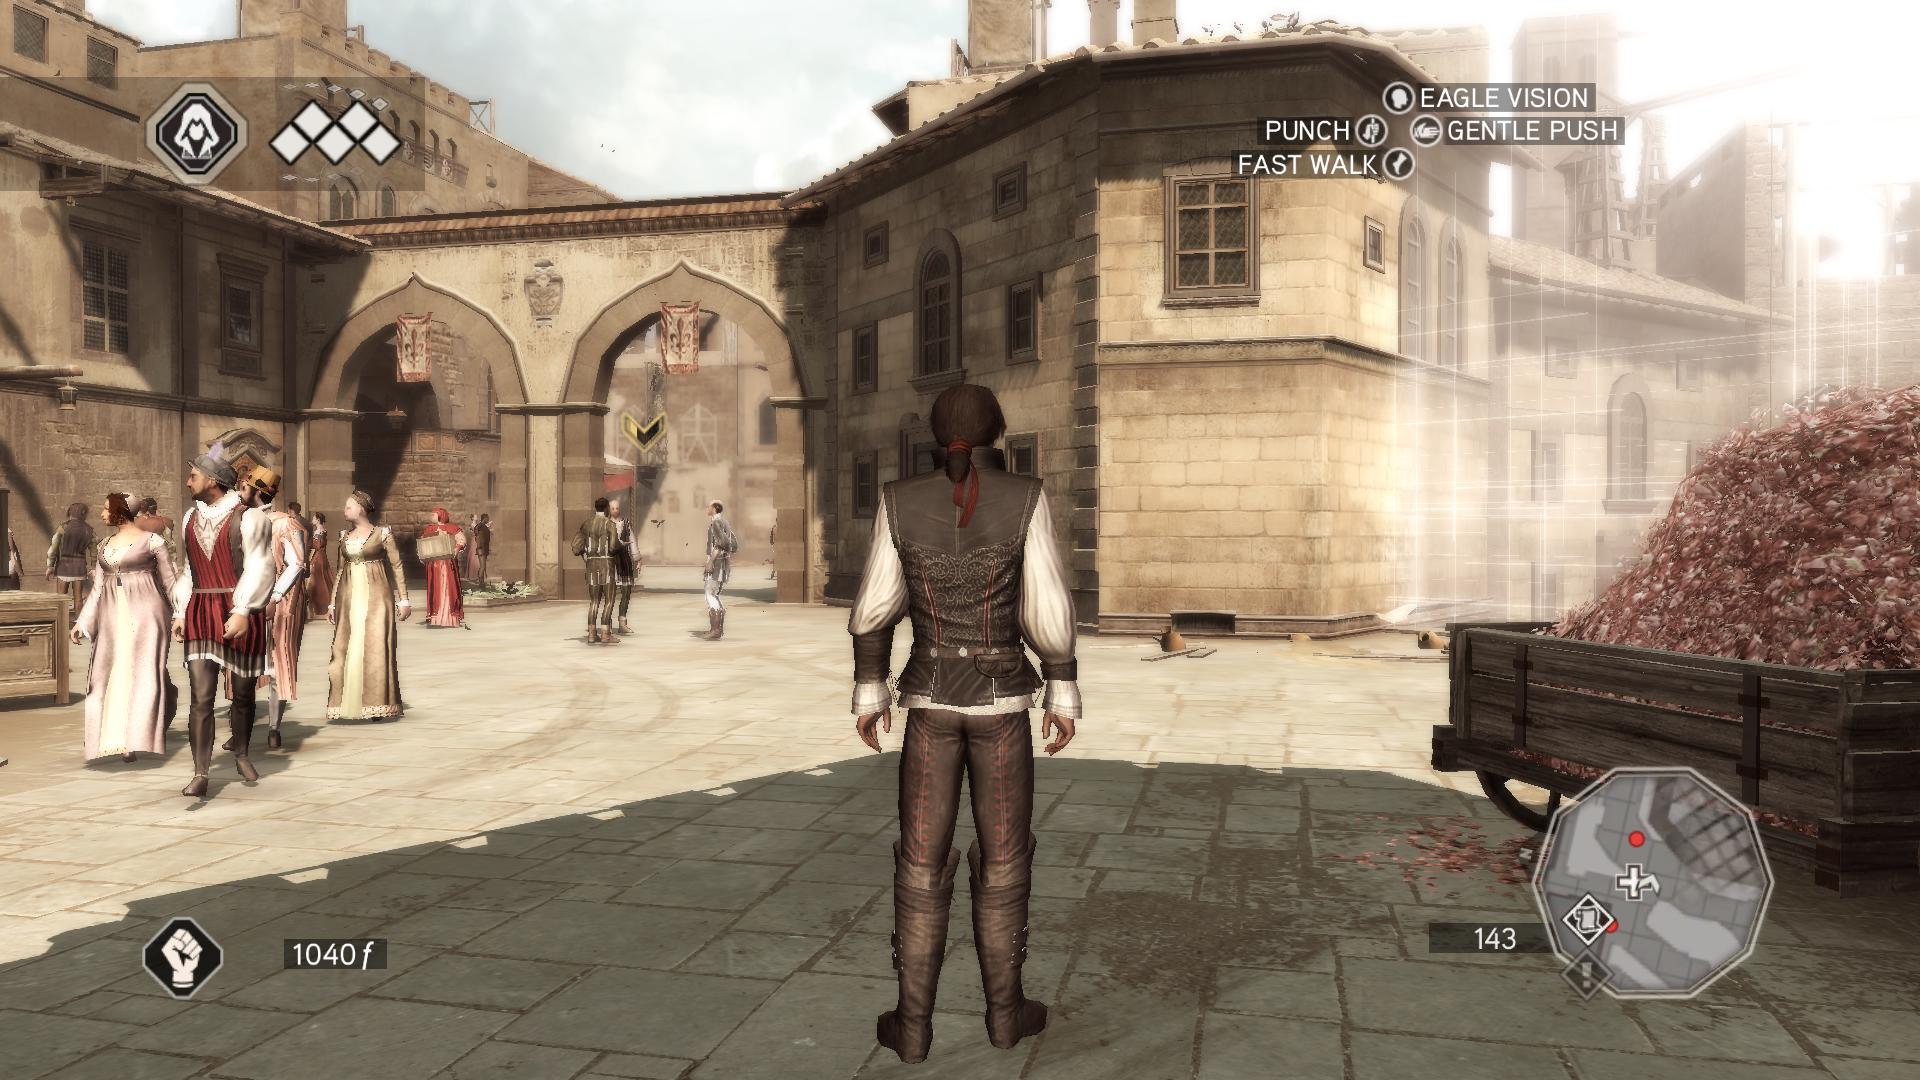 Ассасин 2 загадки. Ассасин Крид 2 иксбокс 360. Assassin’s Creed 2 (Xbox 360) Скриншот. Assassins Creed 2 Скуола Сан Марко.